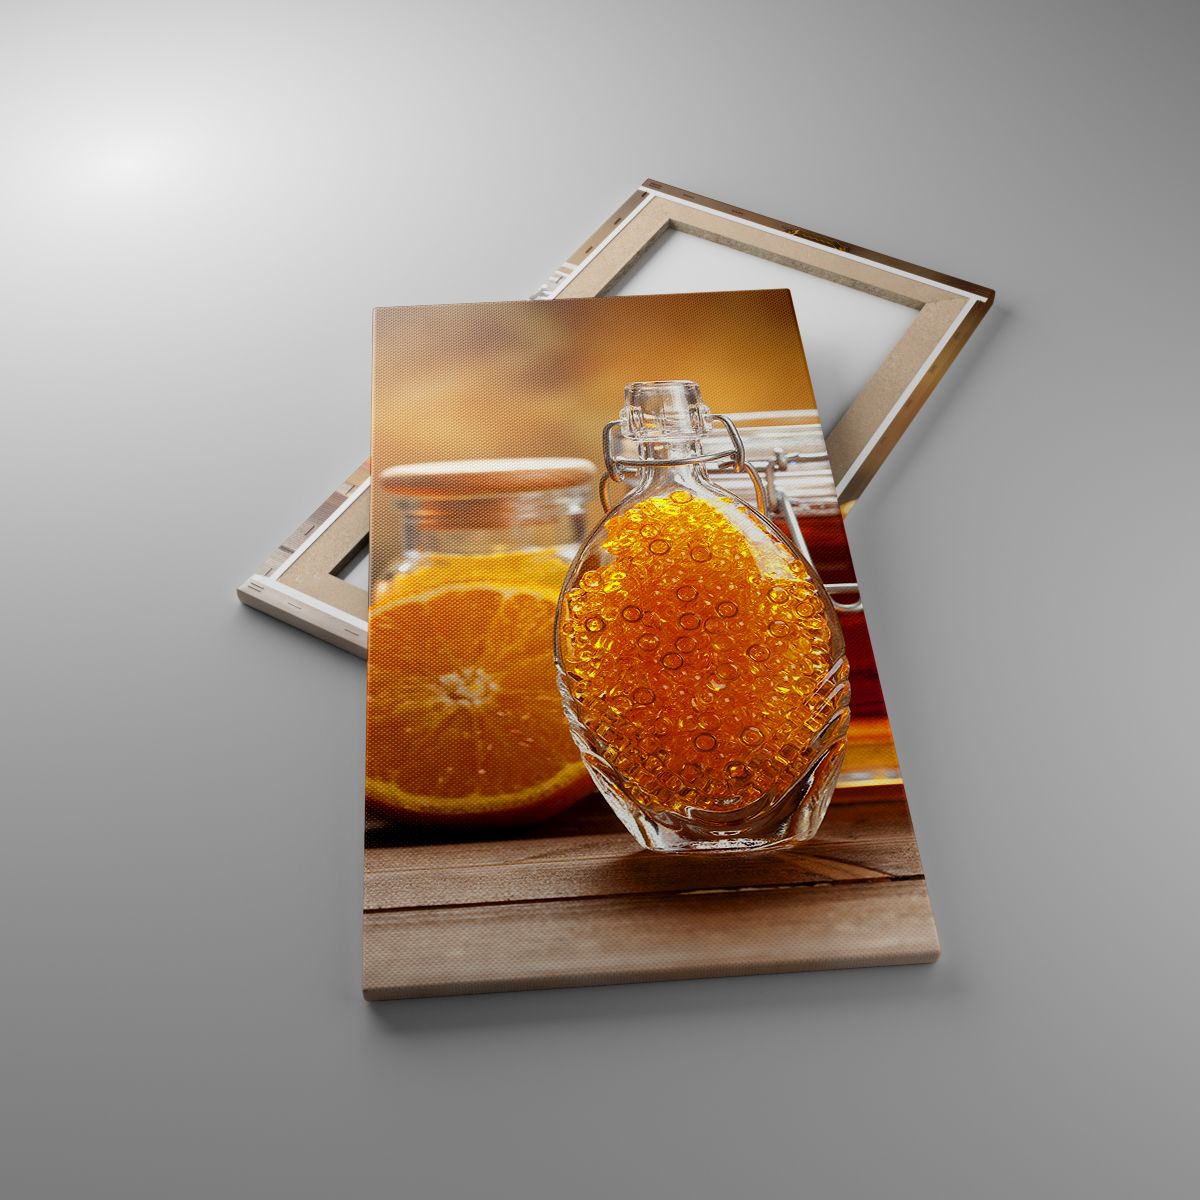 Leinwandbild Gastronomie, Leinwandbild Orange, Leinwandbild Glas Mit Honig, Leinwandbild Steine, Leinwandbild Orangen